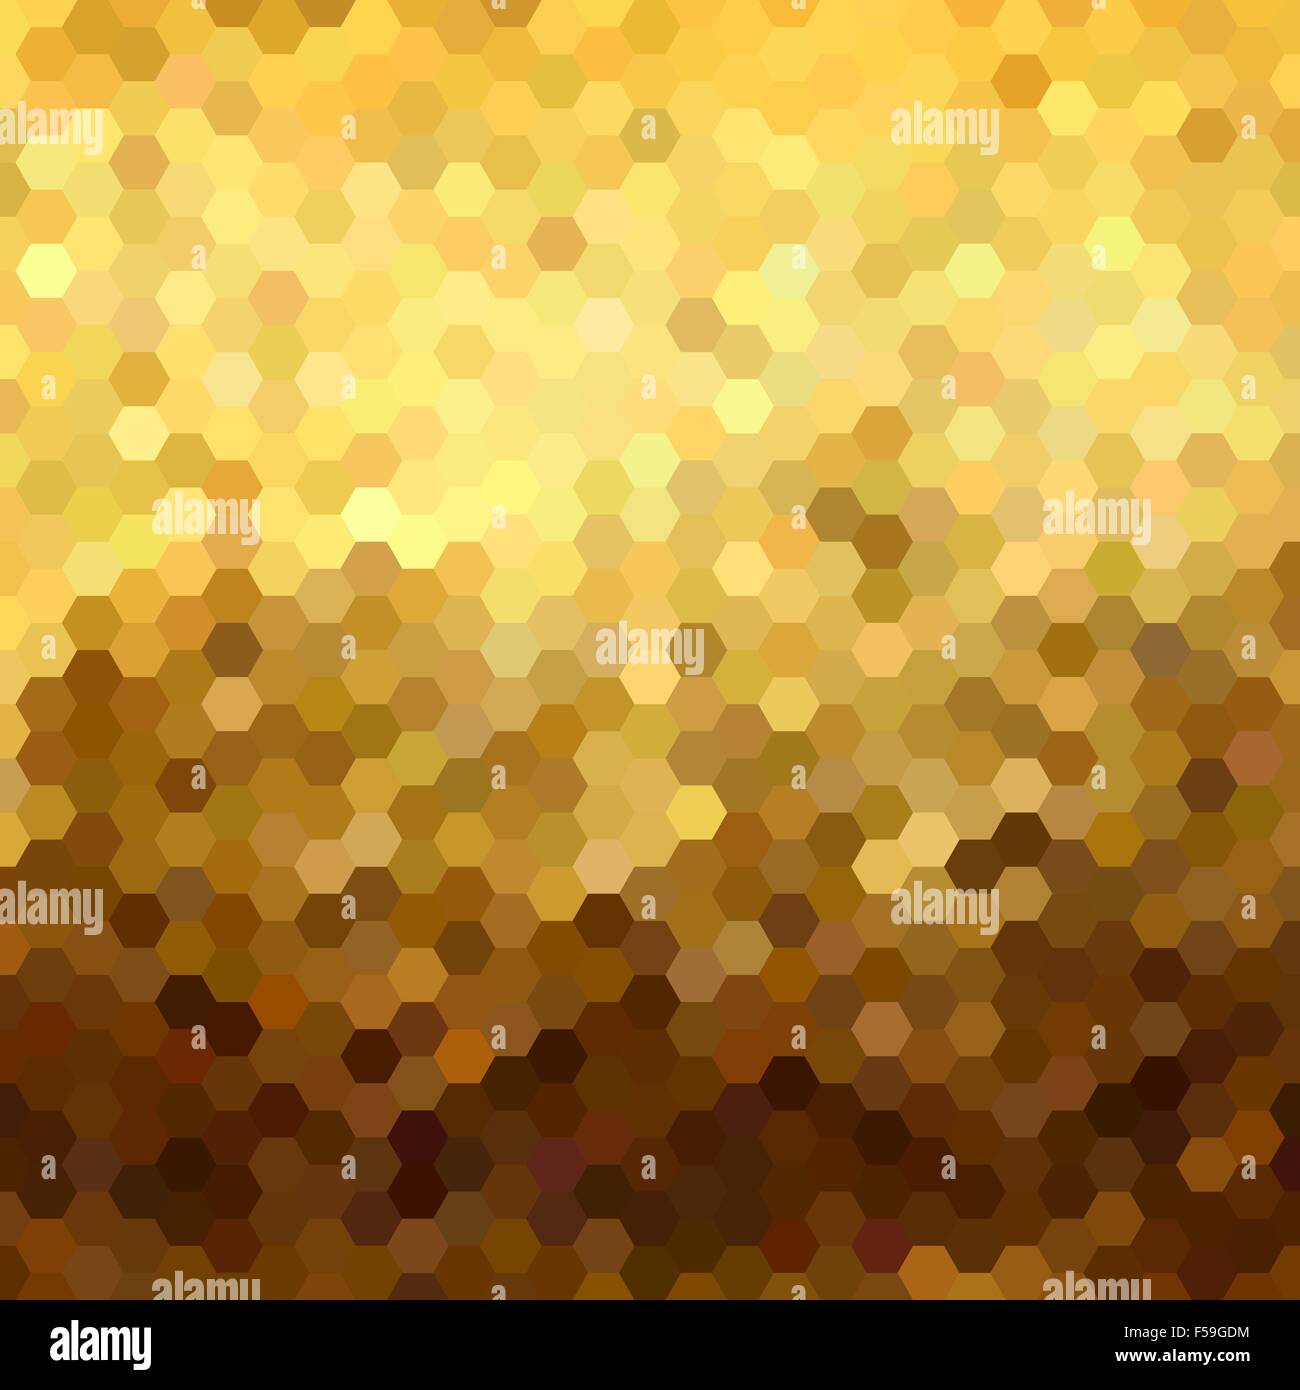 Grille nid d'or de fantaisie motif transparente de la géométrie en basse style poly. Idéal pour l'arrière-plan web, print, ou des cartes de vœux. Illustration de Vecteur